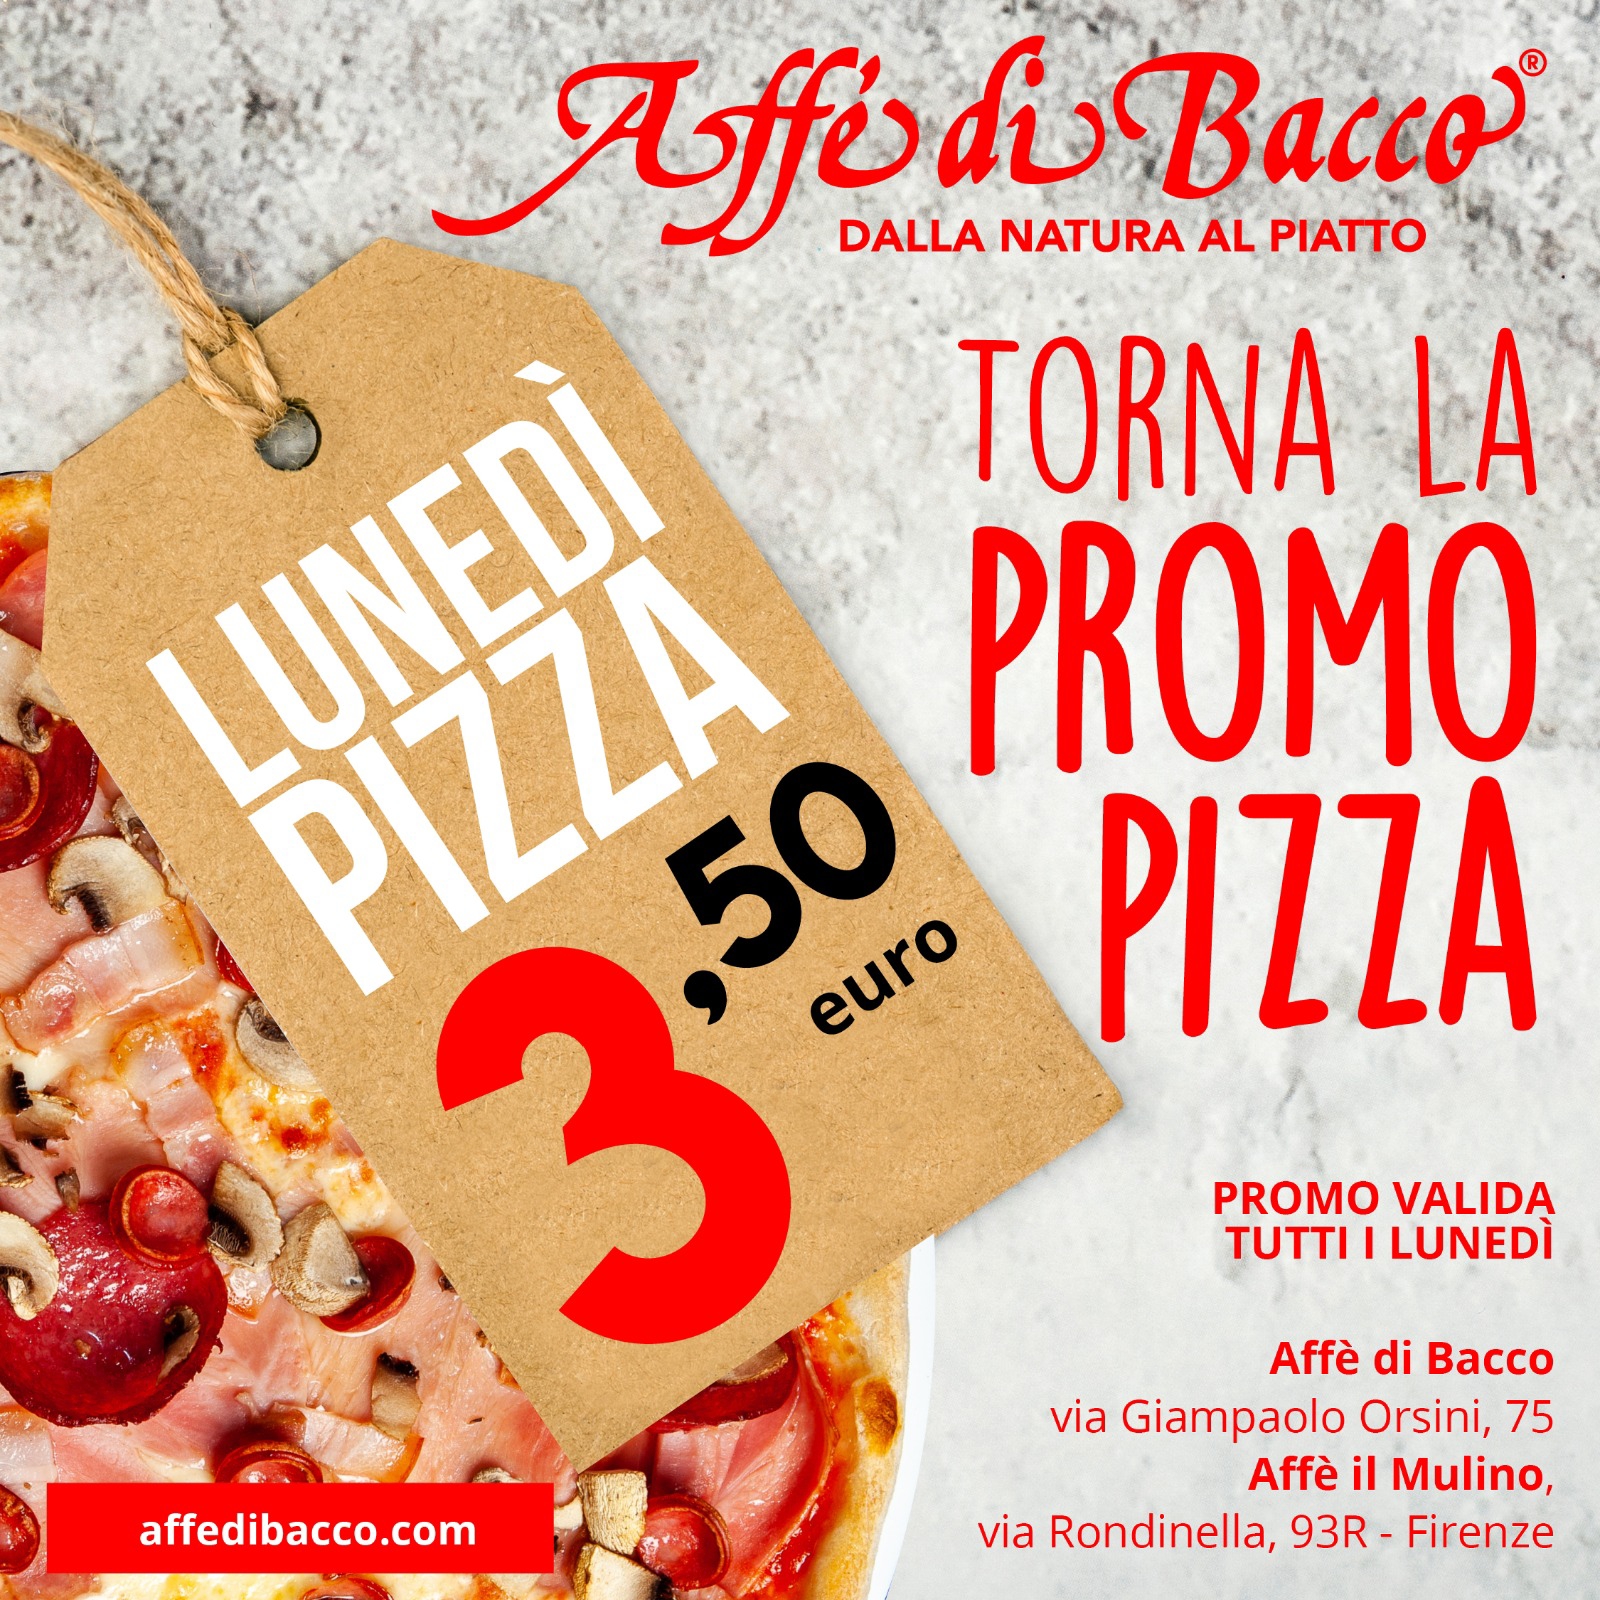 promo pizza 3 euro